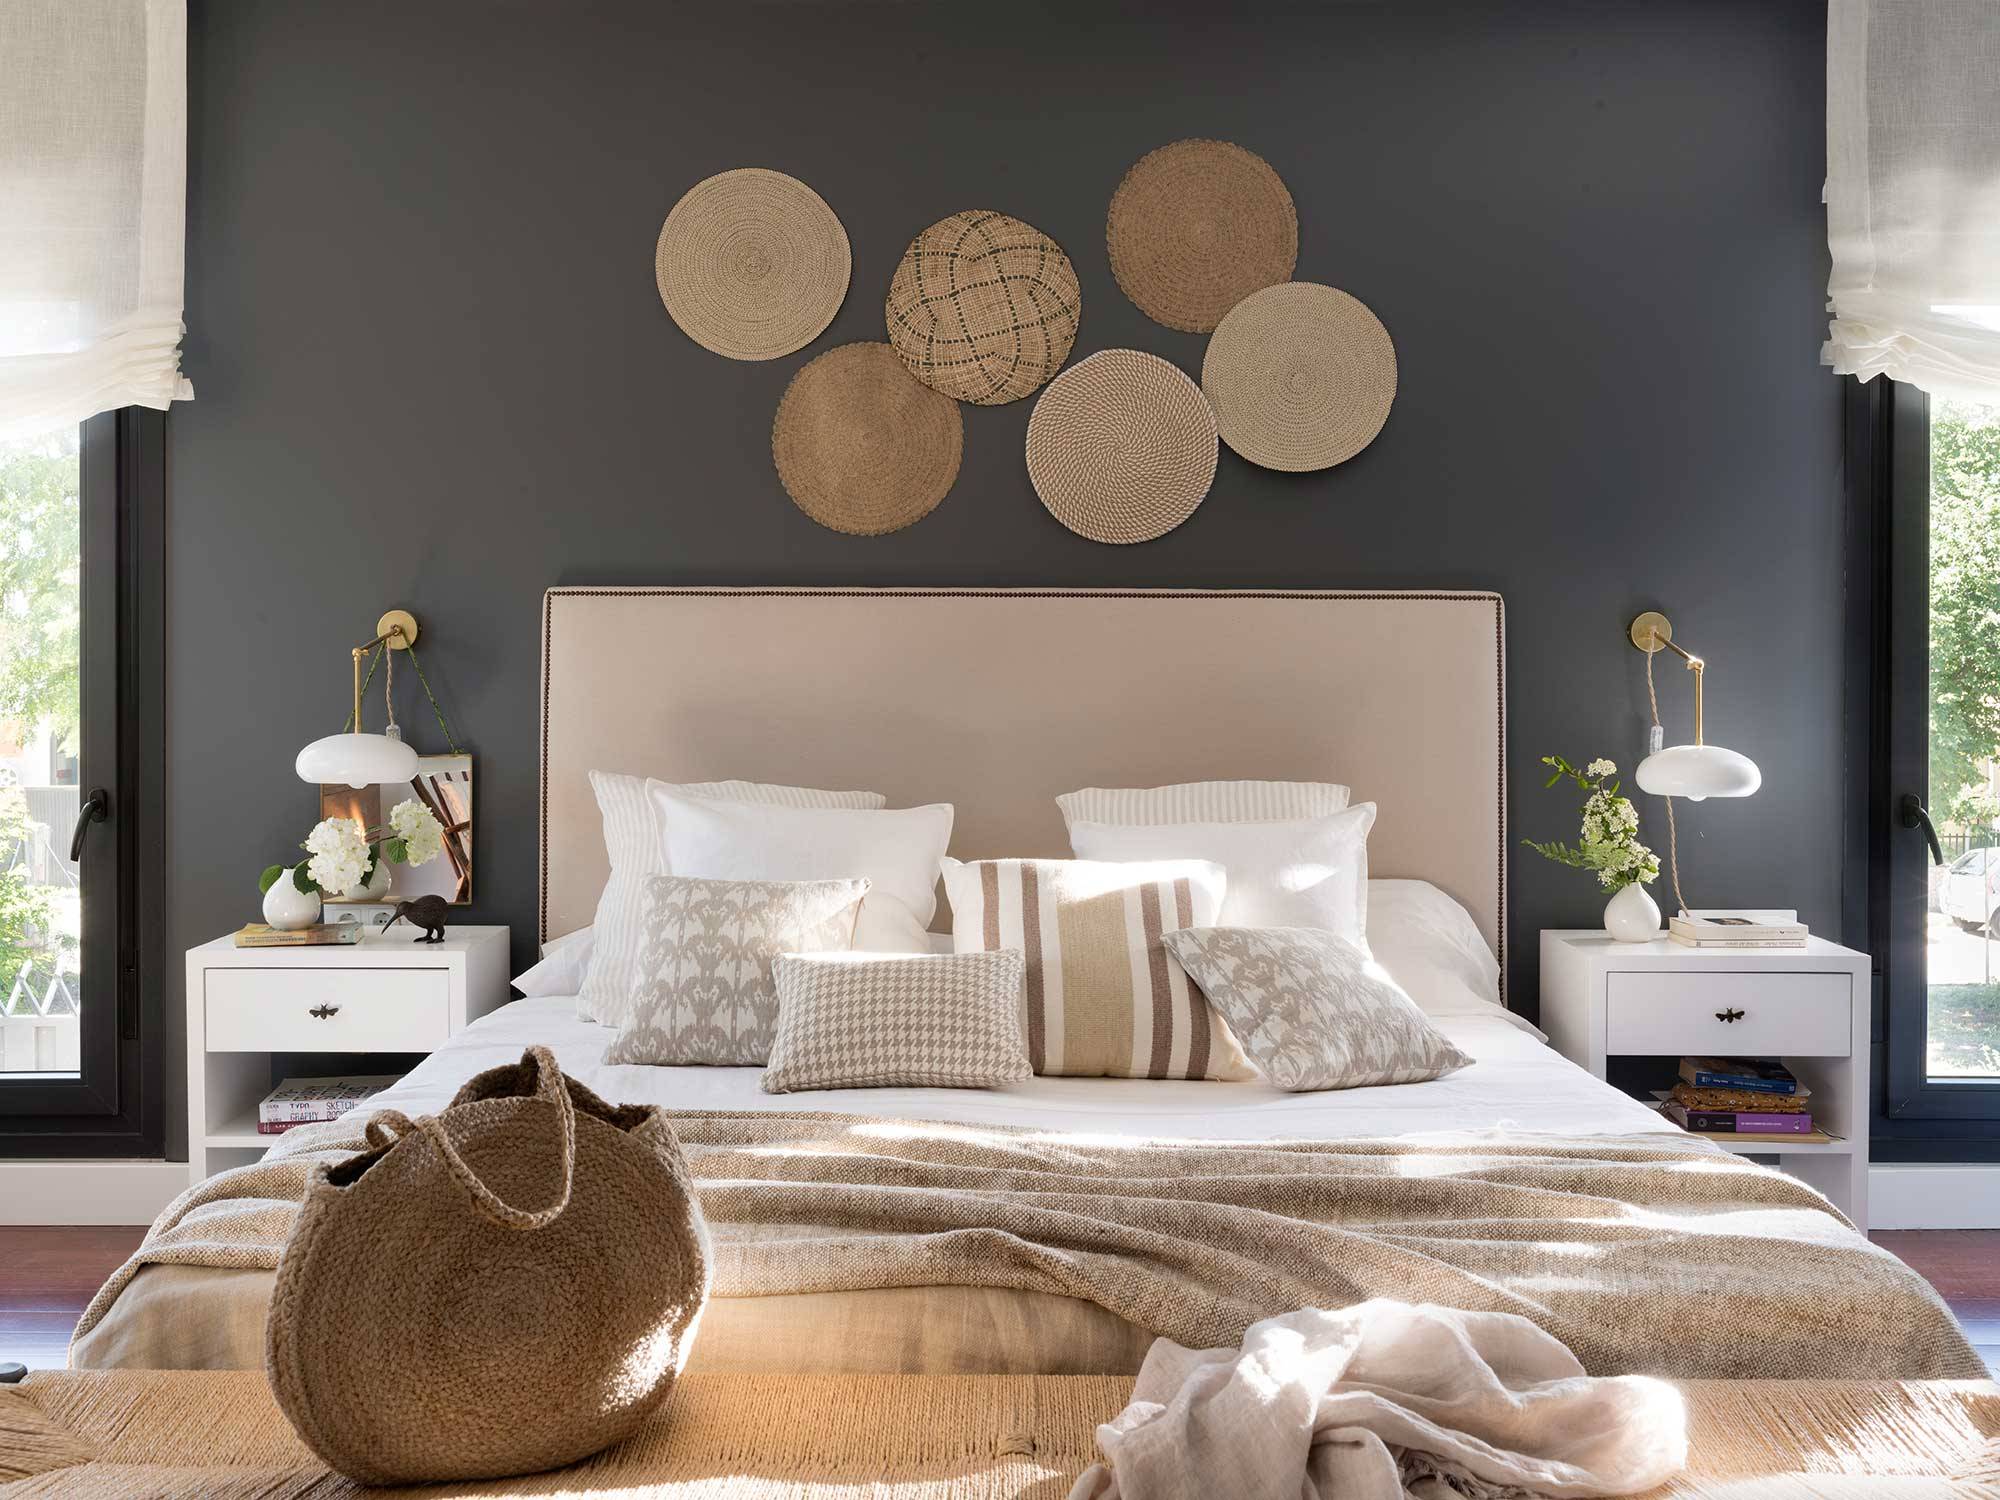 Dormitorio con pared gris oscuro y composición decorativa de individuales colgados_00527500 O